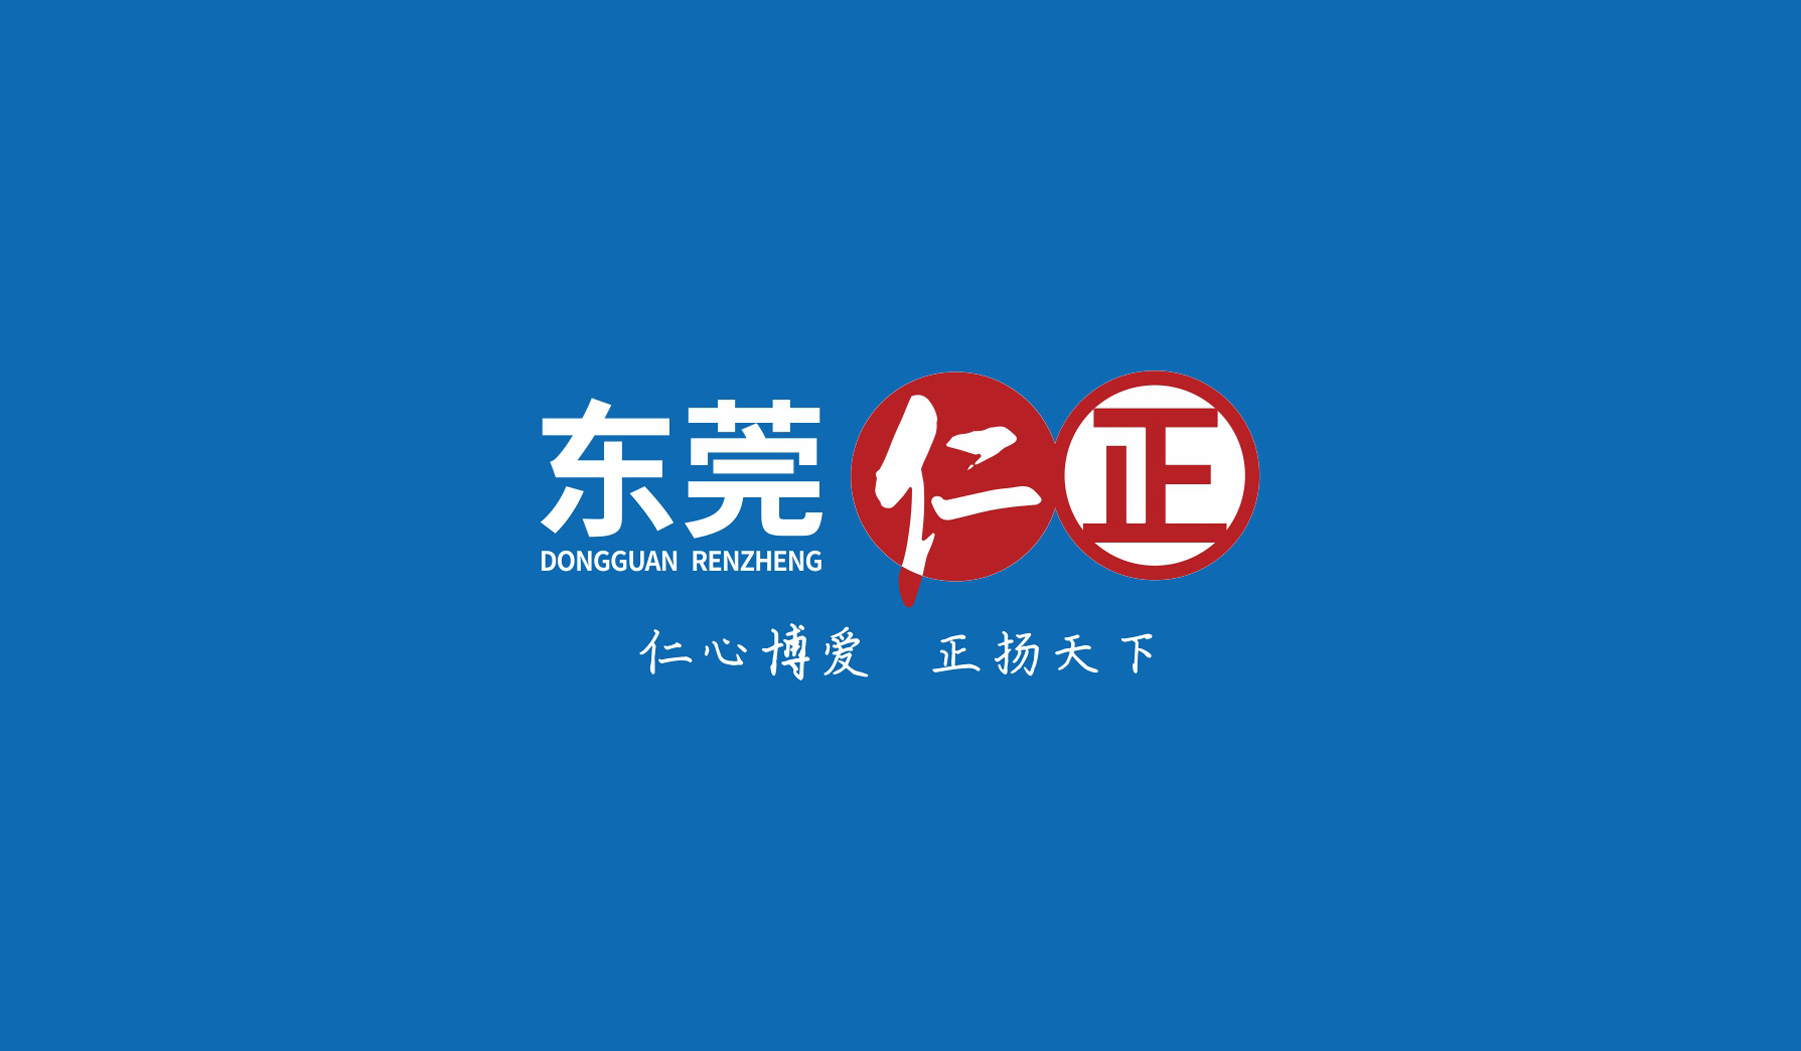 仁正医药品牌logo背景色标准